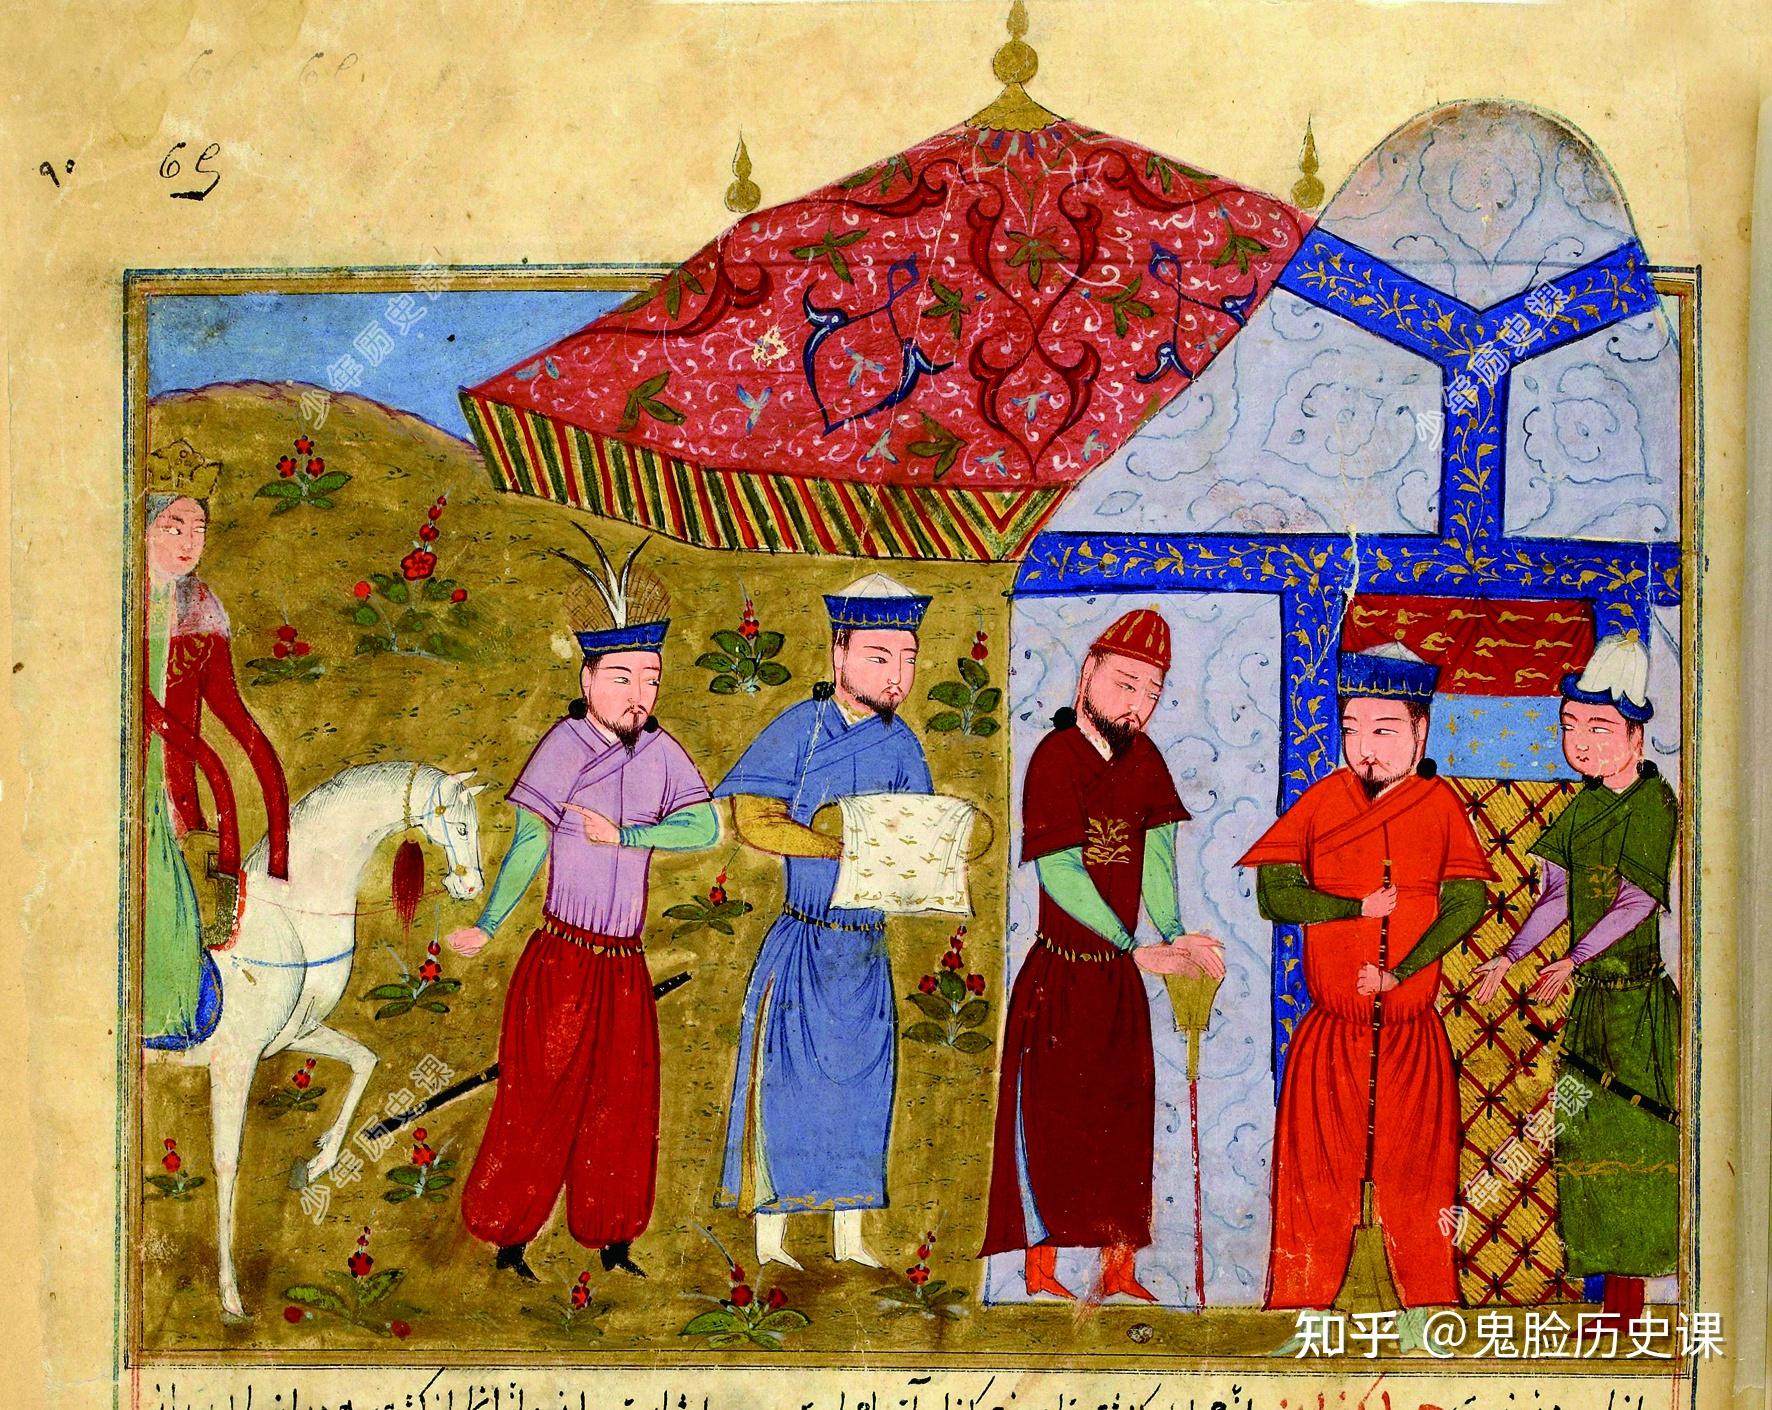 1214 年,成吉思汗率军围困金中都,金宣宗与大臣商议后决定与蒙古和亲